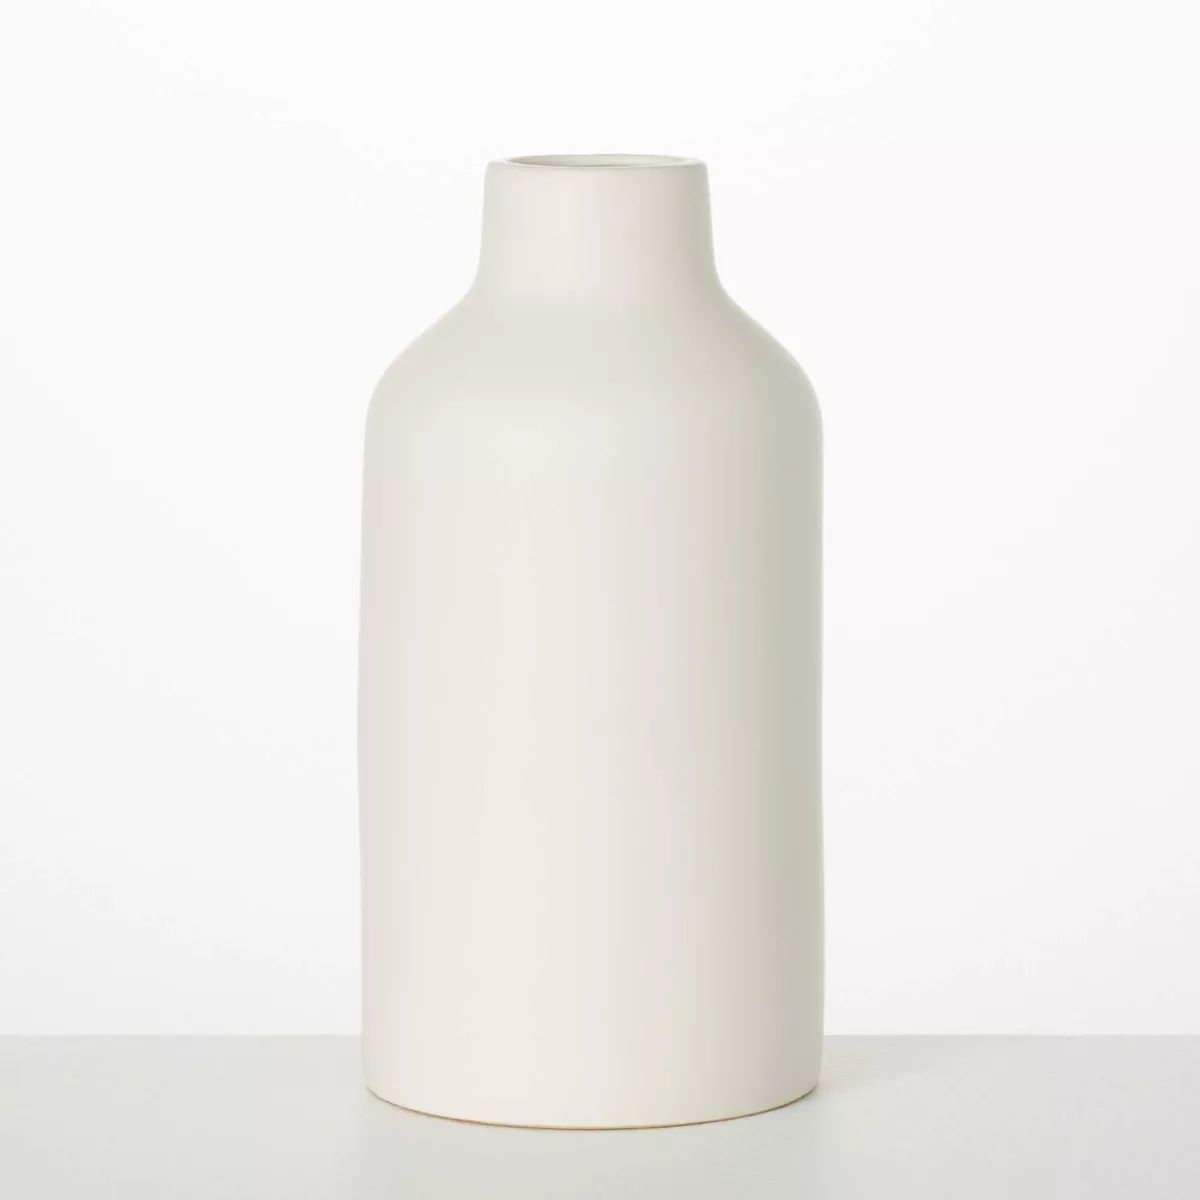 Sullivans 12" Large Matte Ivory Bottle Vase, Ceramic | Target